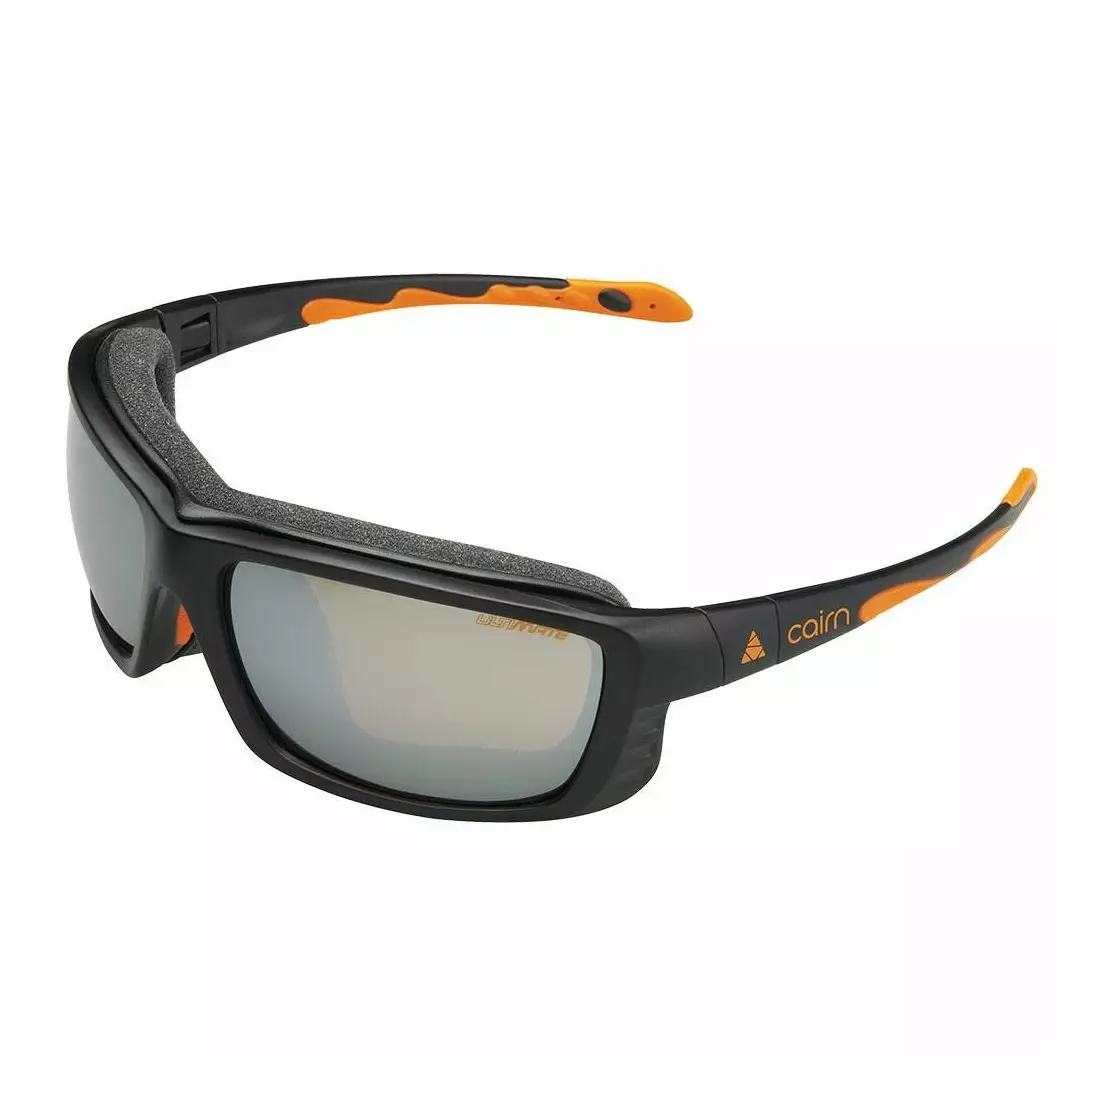 CAIRN okulary sportowe fotochromowe IRON PHOTOCHR black/orange XPIRON02